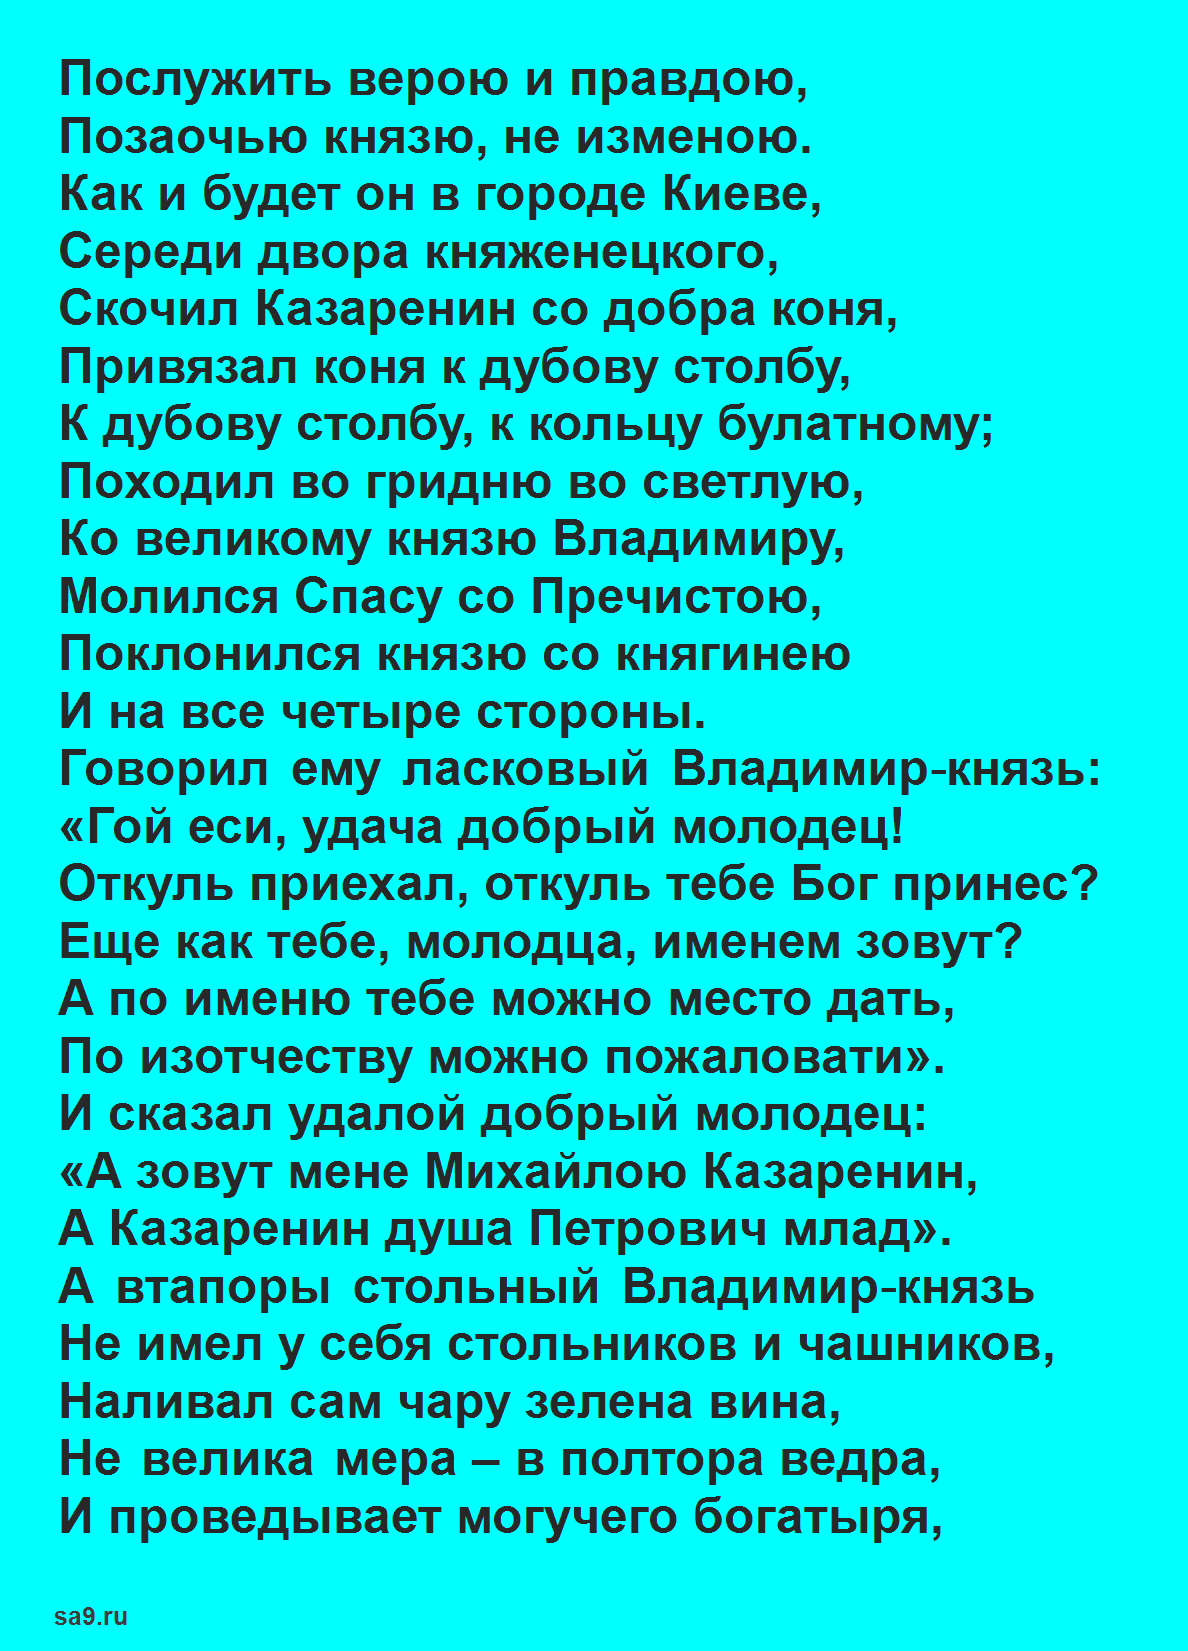 Читать былину - Михайло Казаренин